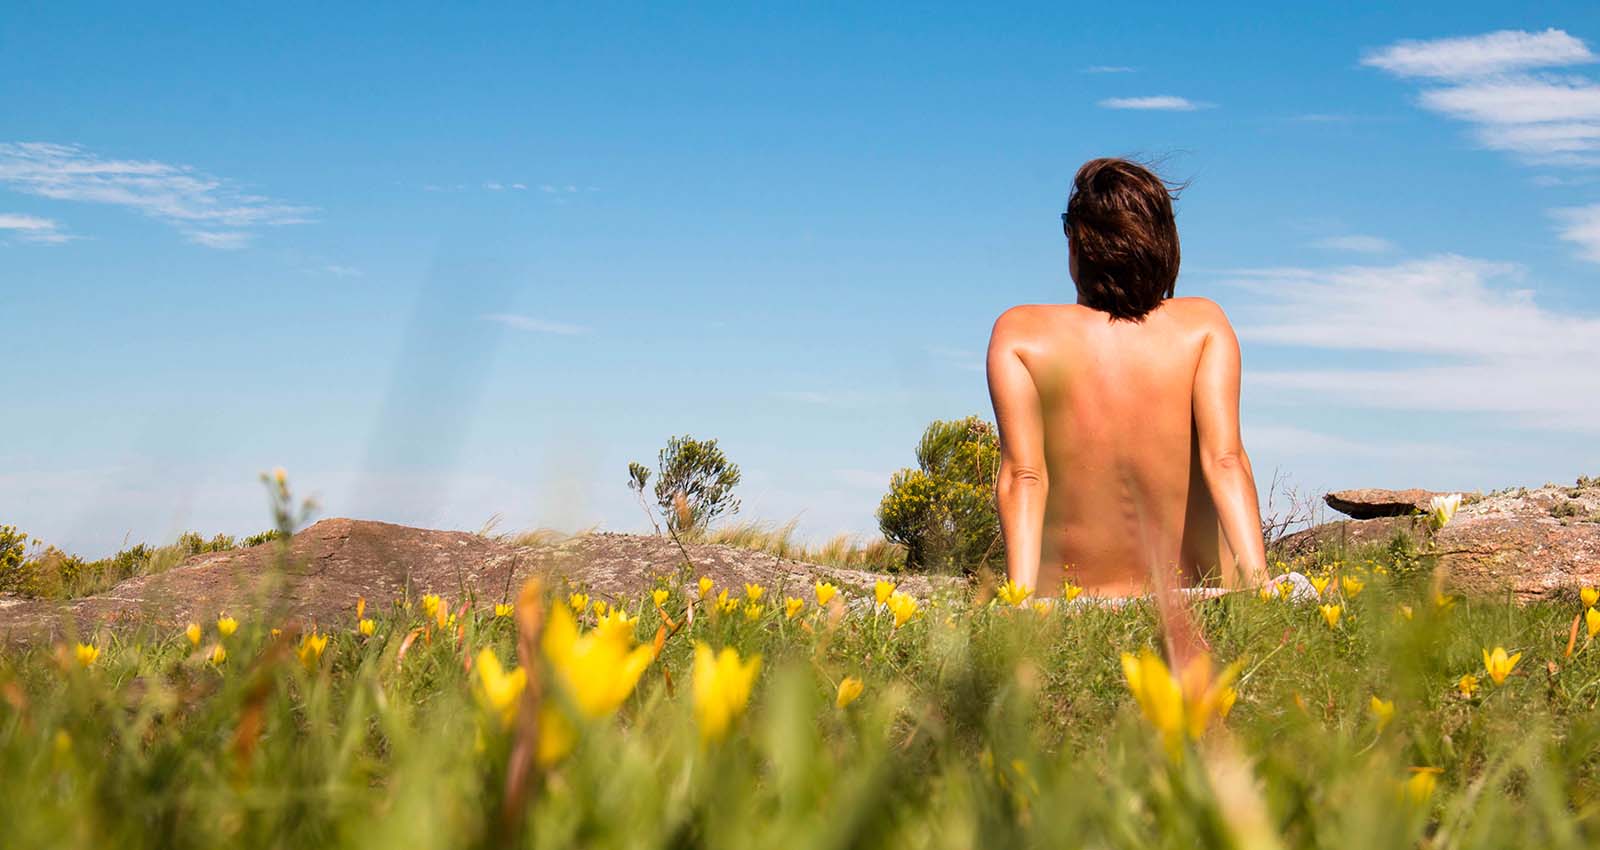 Travel sustainably, travel naked